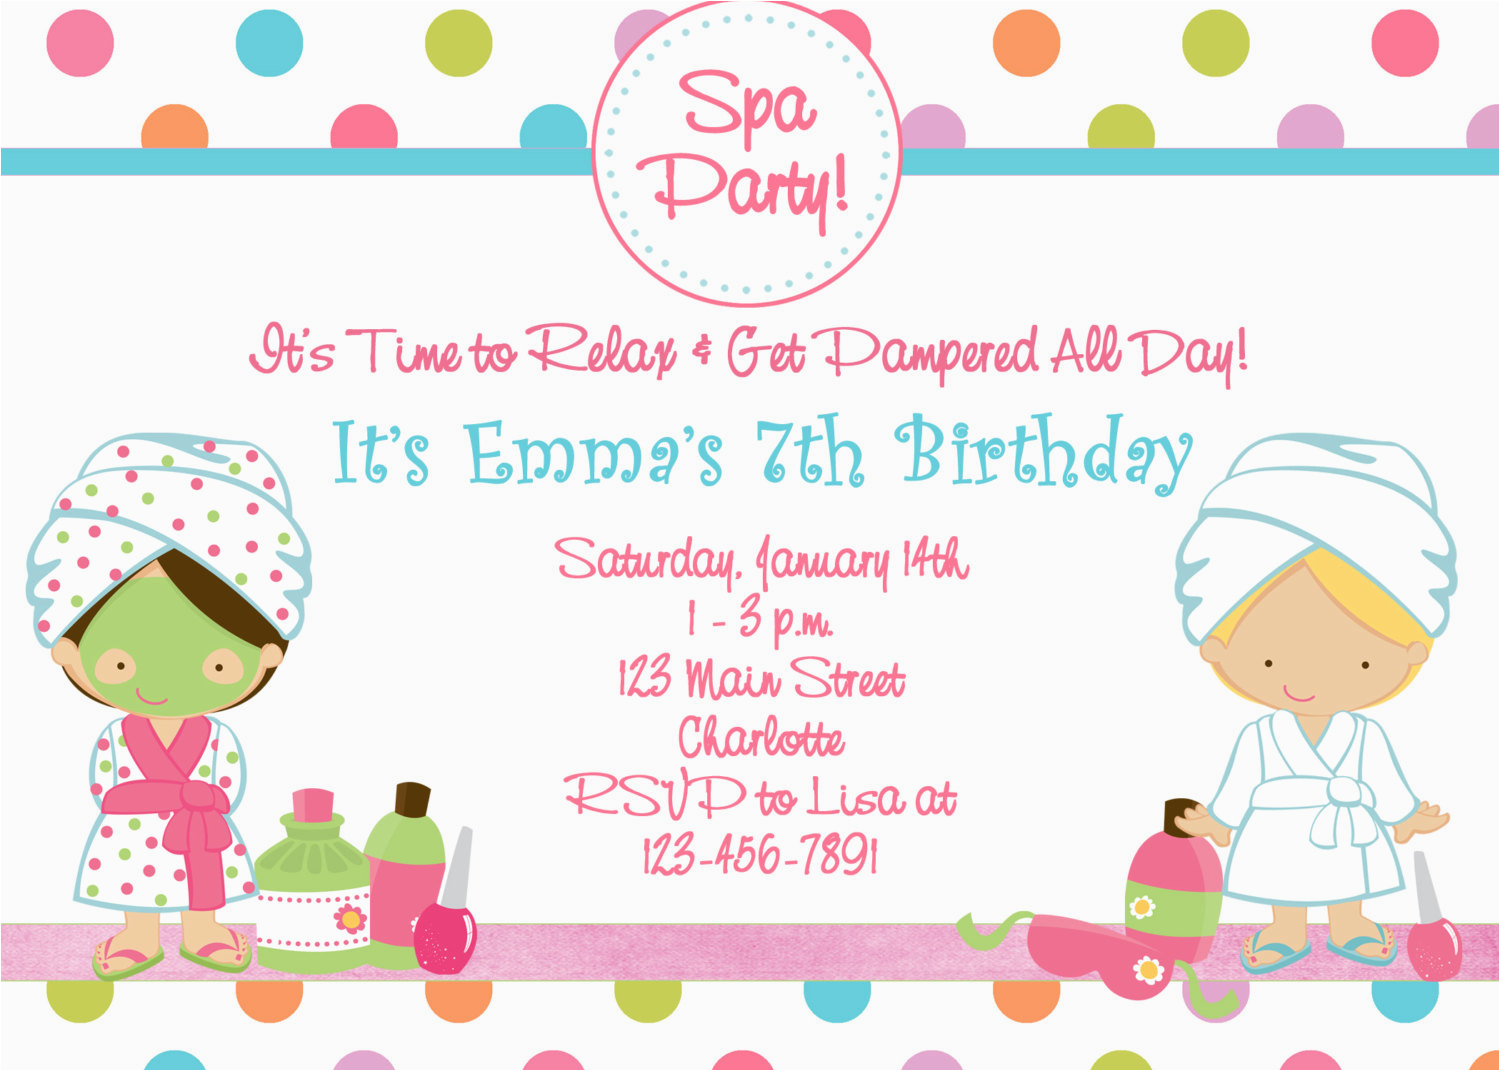 Spa themed Birthday Party Invitations Printable Free Printable Spa Birthday Party Invitations Pool